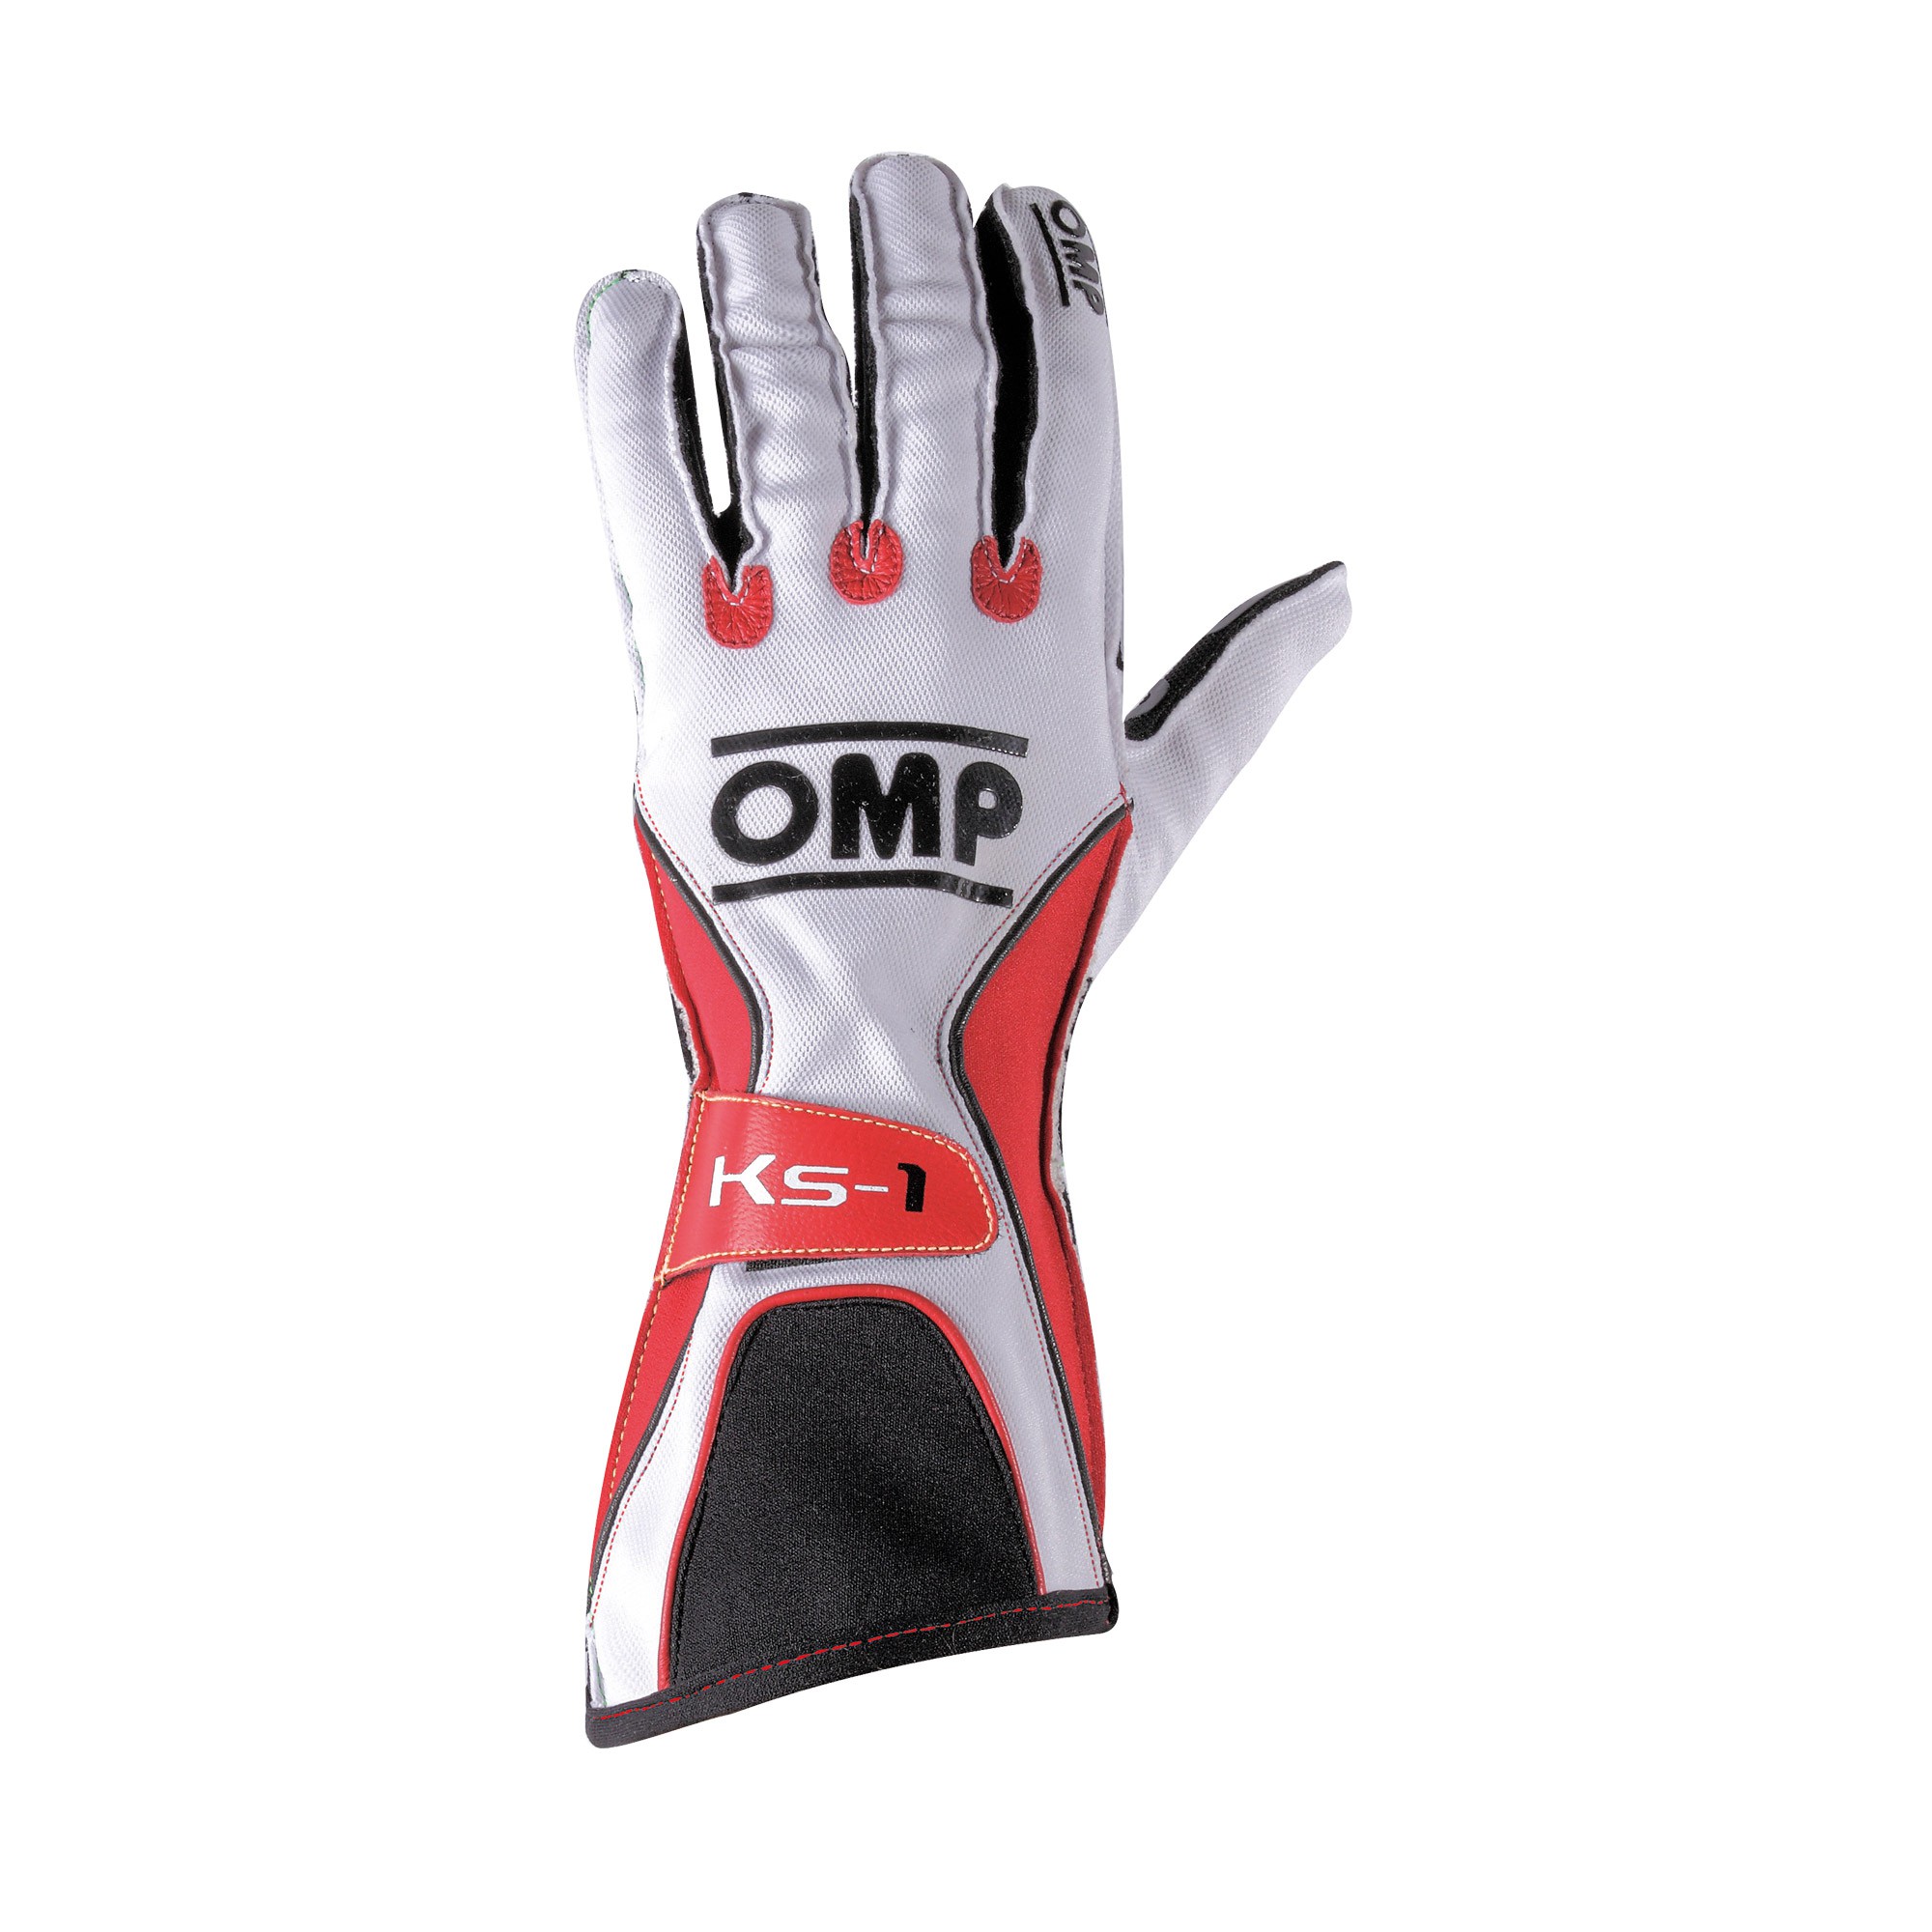 KS-1 GLOVES - Karting gloves | OMP Racing